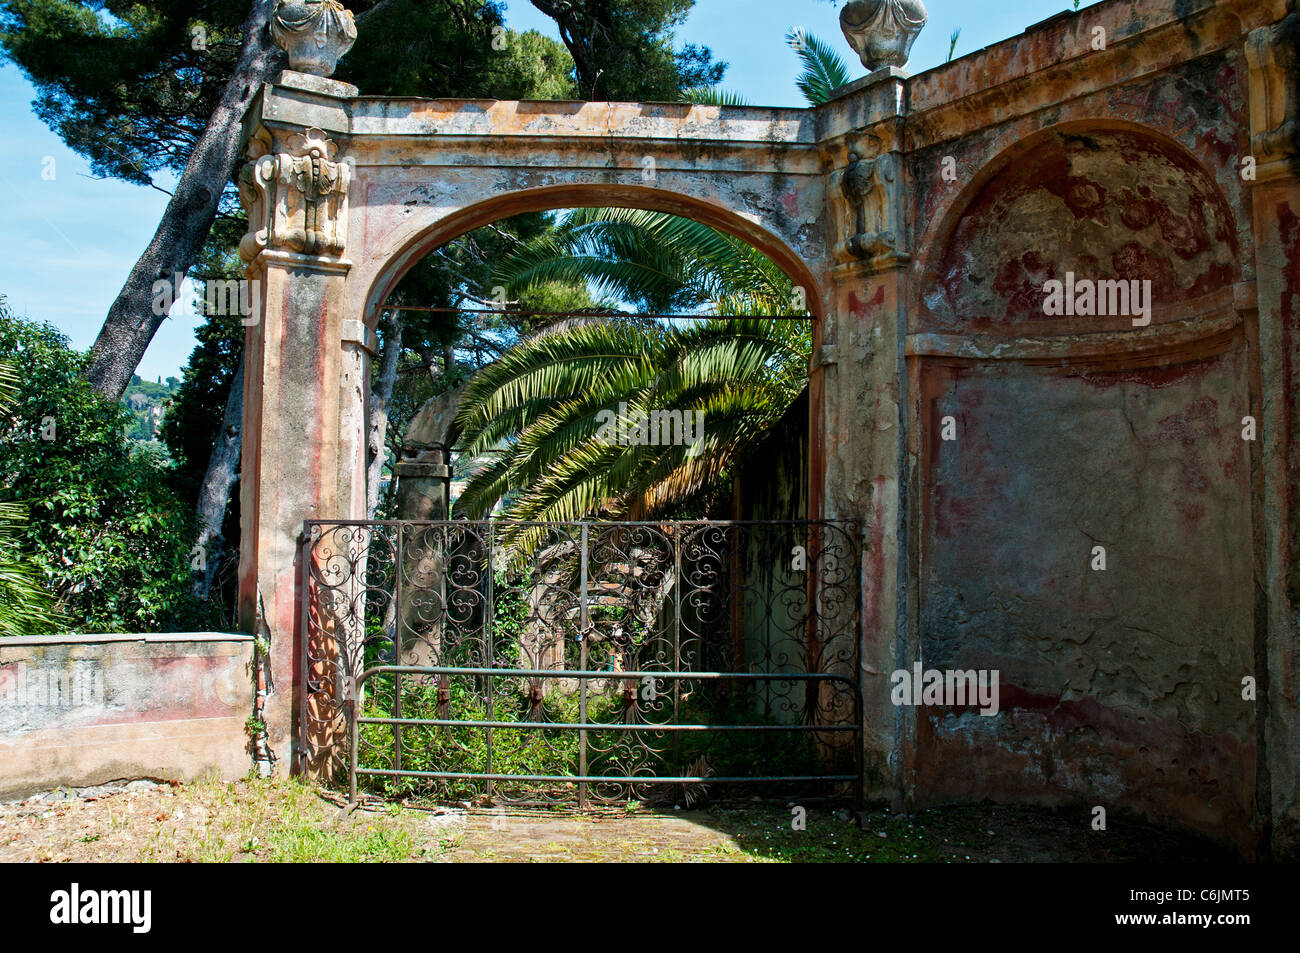 L'élégant porche disparu l'entrée dans une arcade arboricole du 17ème siècle dans les jardins de la Villa Durazzo, Santa Margherita Banque D'Images